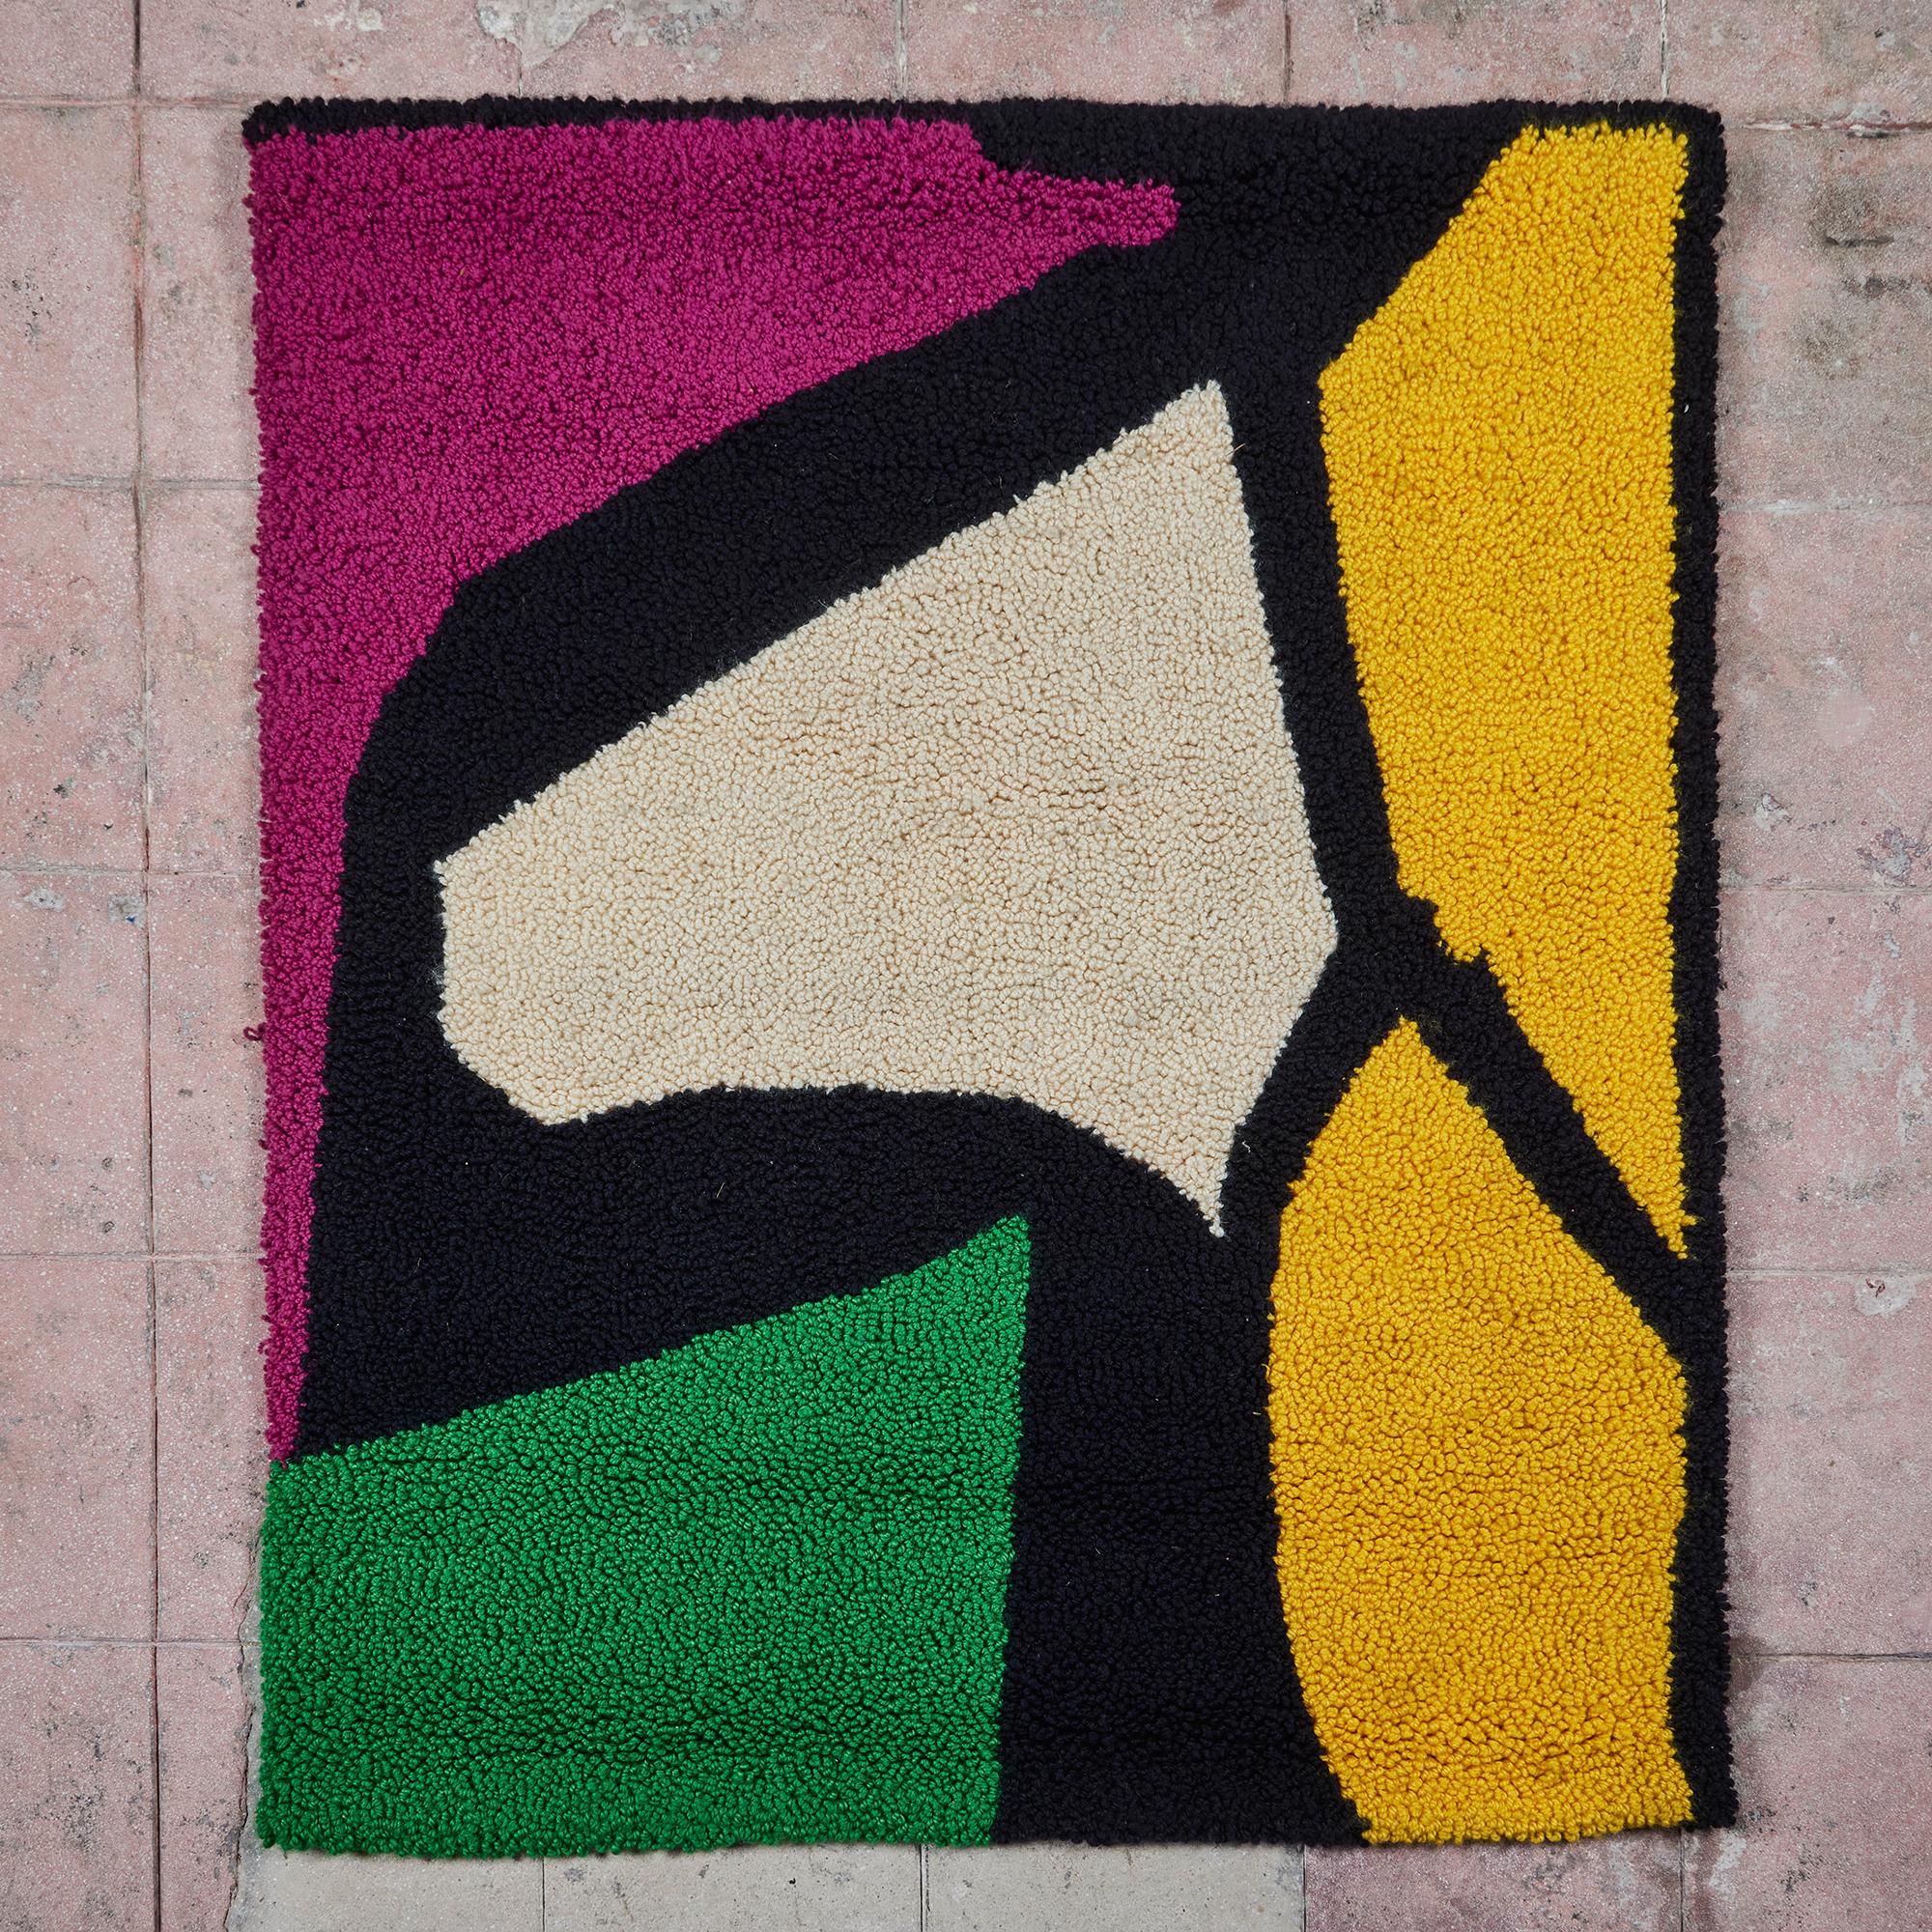 Handgeknüpfter Farbblockteppich, ca. 1972, USA. Ein farbenfroher Wandbehang mit schwarz umrandeten Formen. Die Formen variieren in den Farben Gelb, Lila, Grün und Creme. Das Stück wird an einer festen Stange auf der Rückseite aufgehängt. Signiert